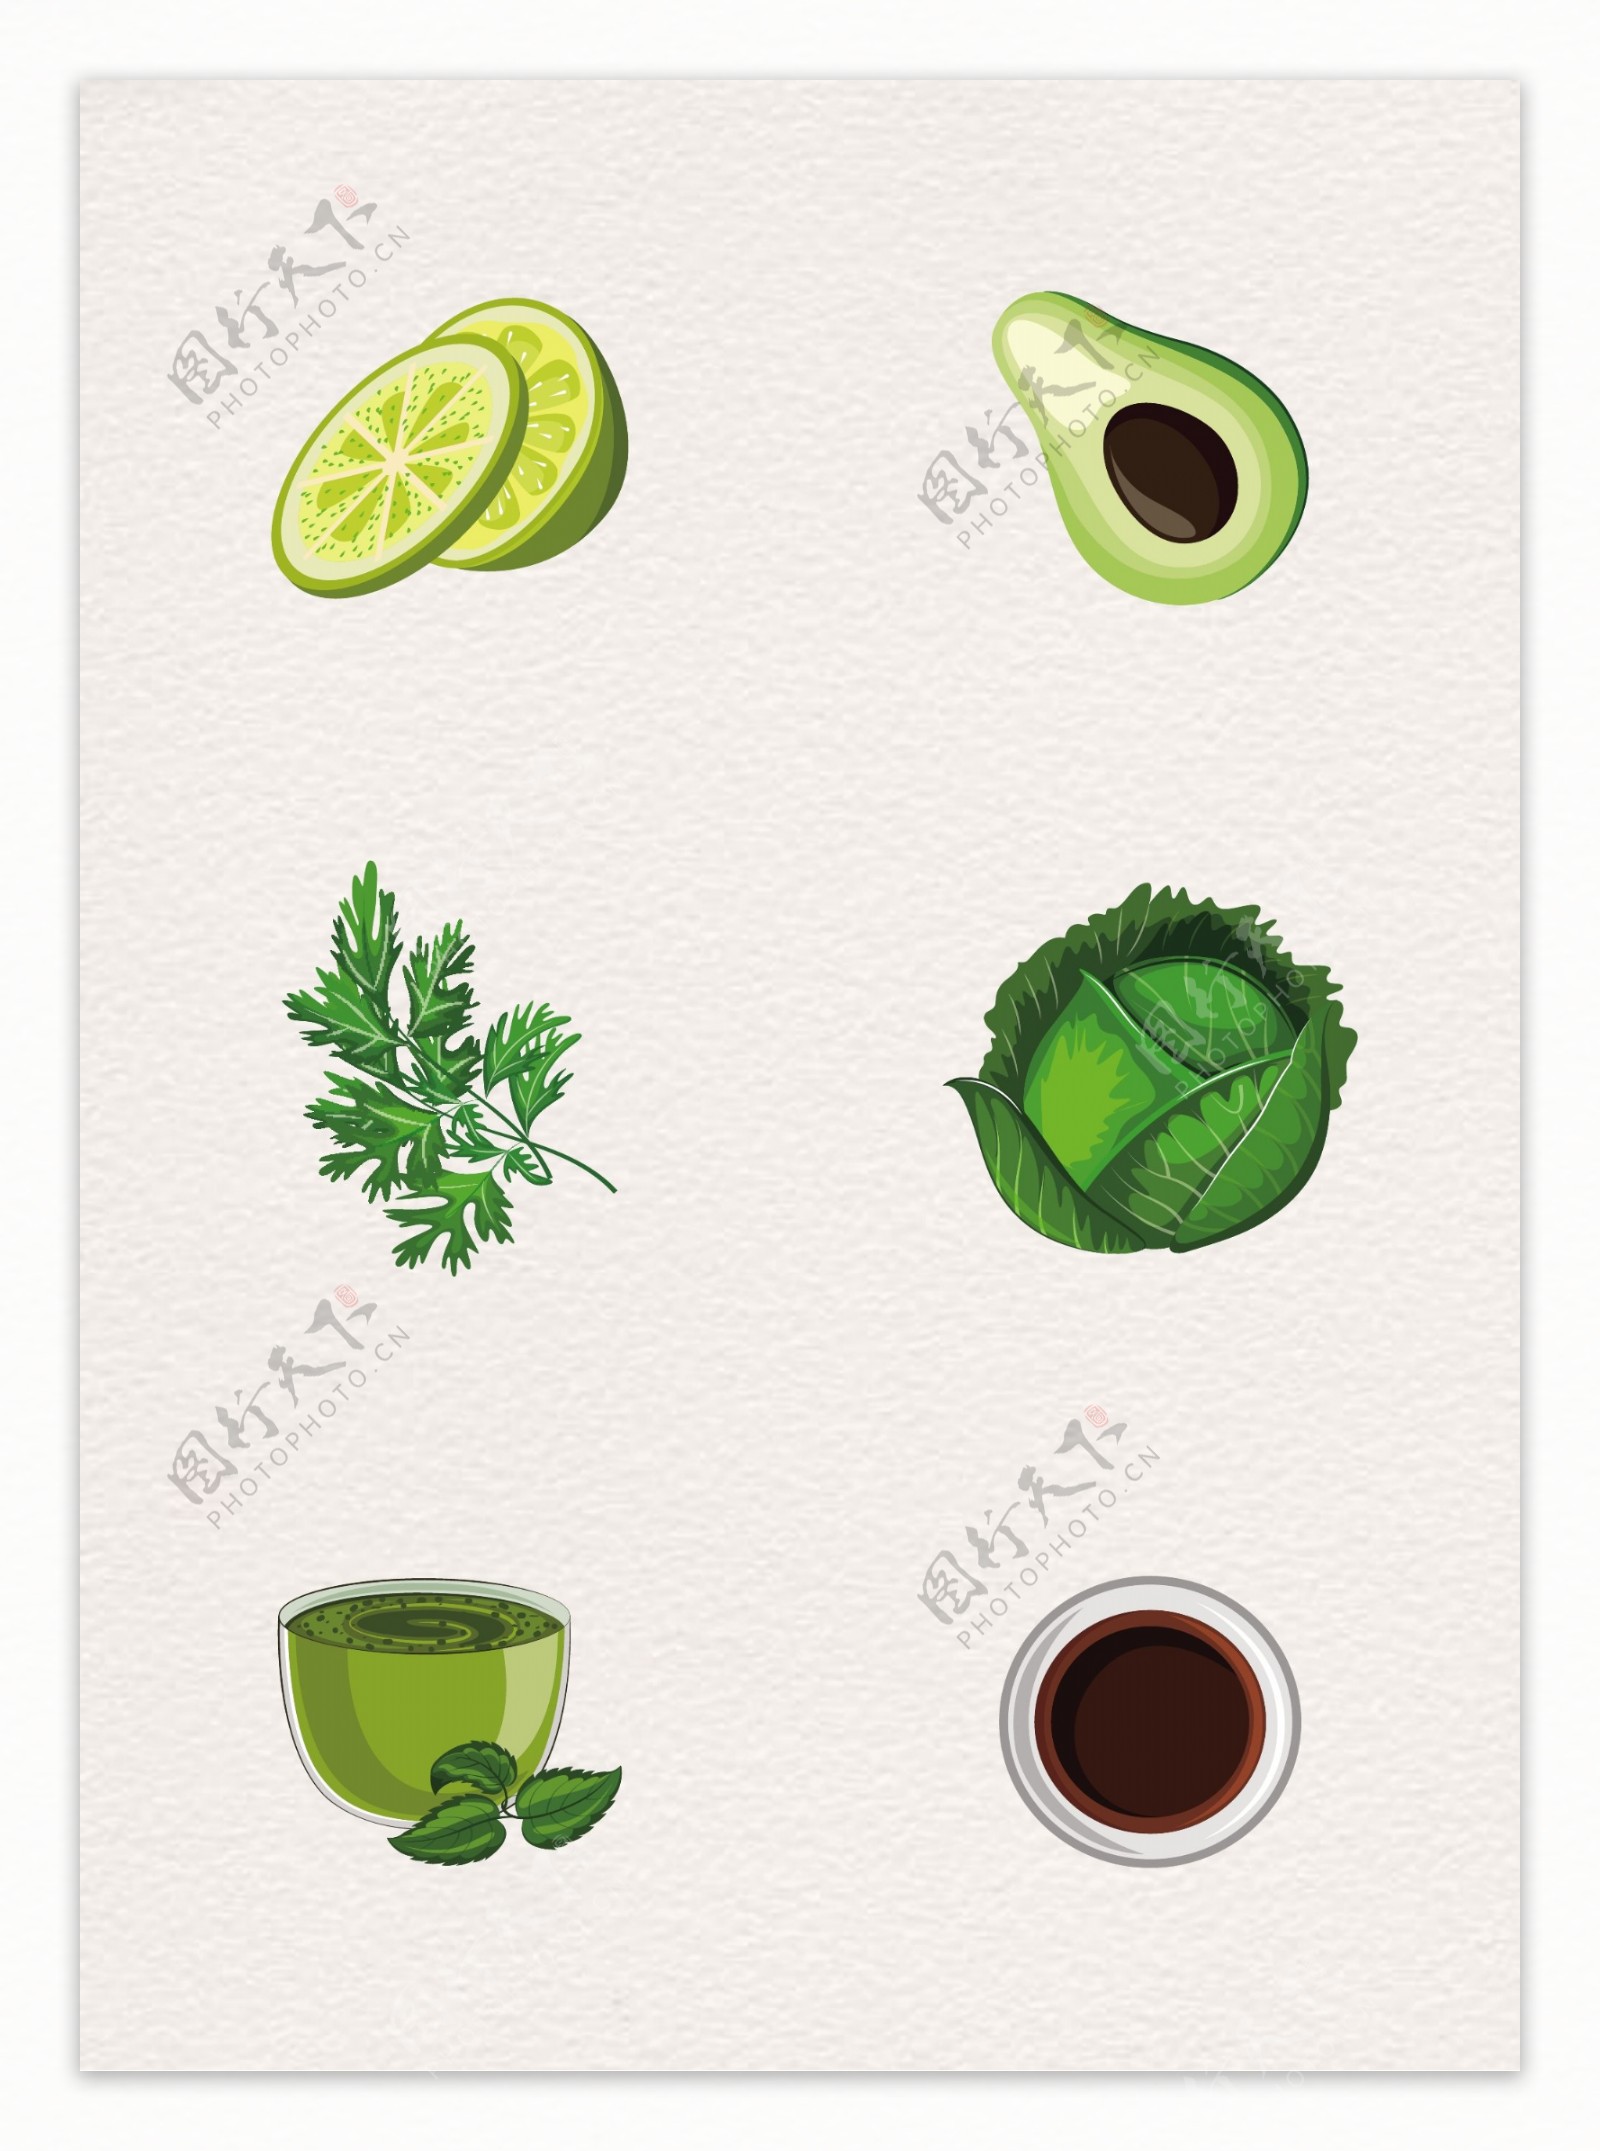 绿色手绘6款食材设计元素